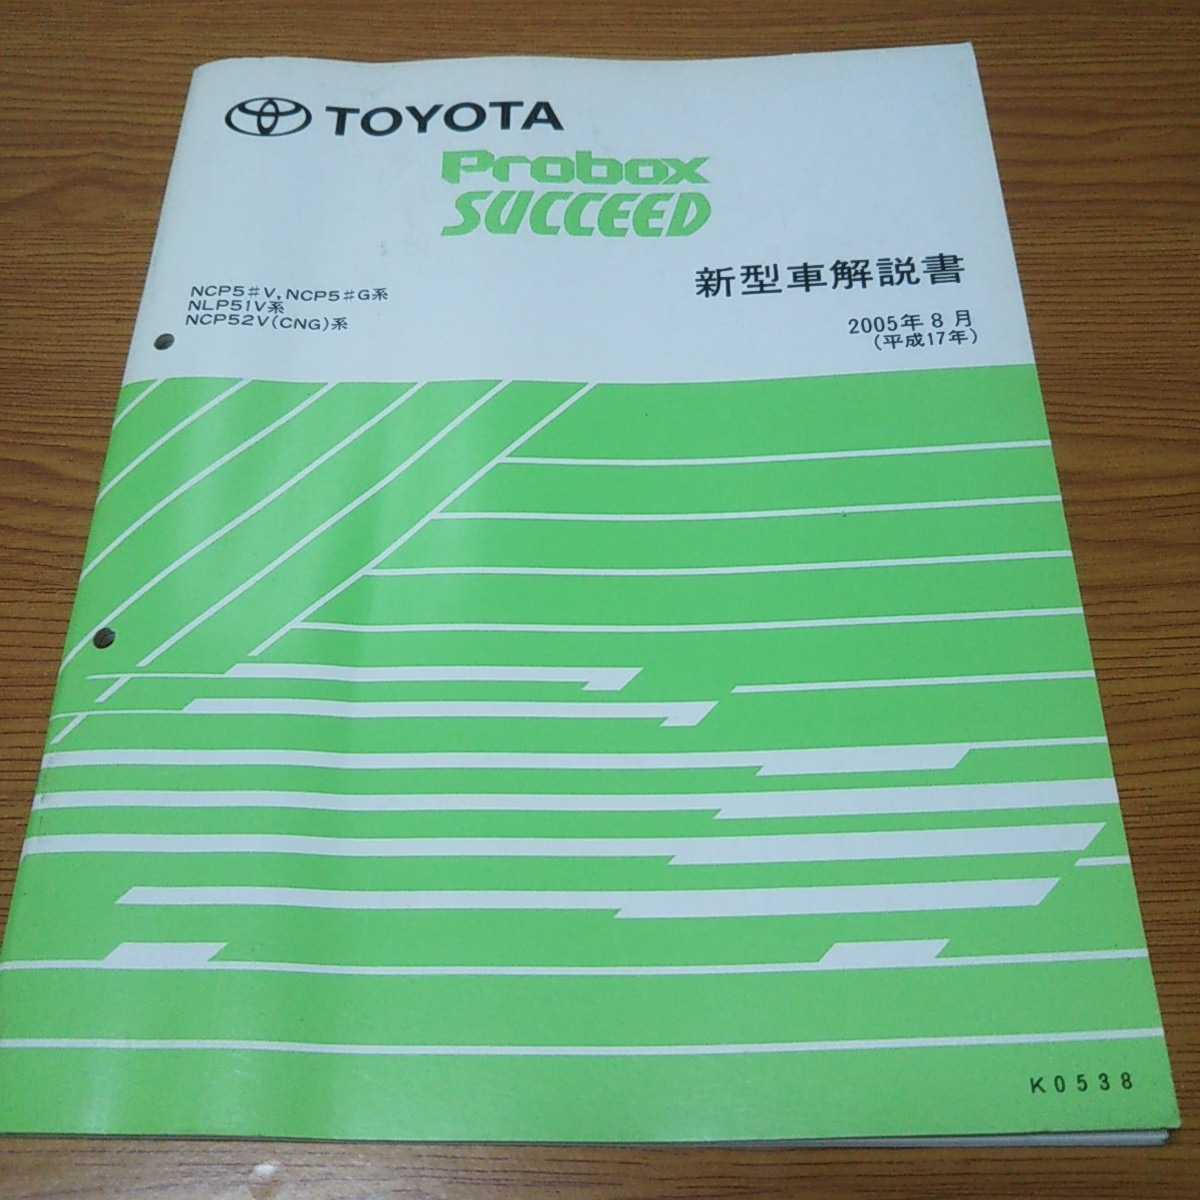 TOYOTA Probox SUCCEED Toyota Probox Succeed инструкция по эксплуатации новой машины 2005 год [K0538]